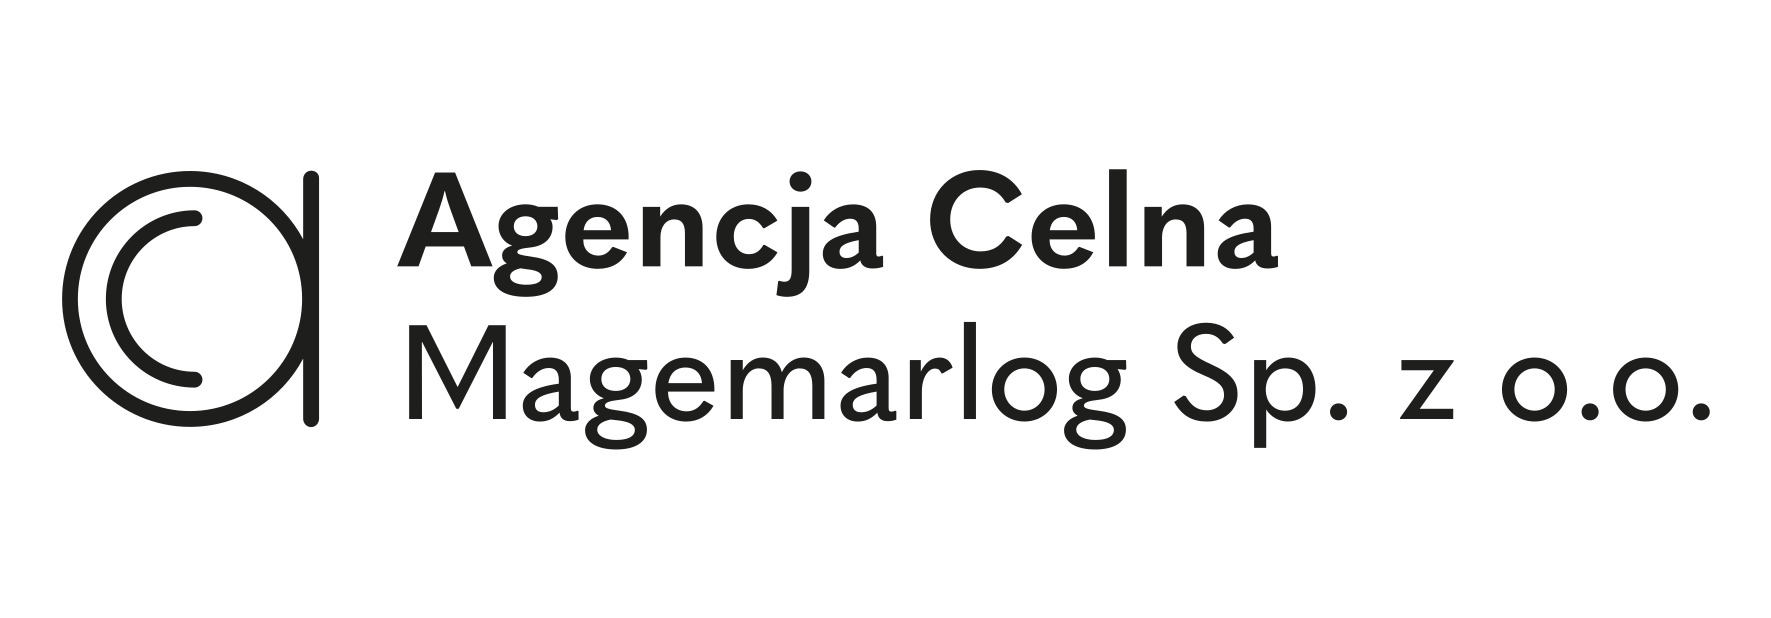 <p>Agencja Celna Gdynia</p>
